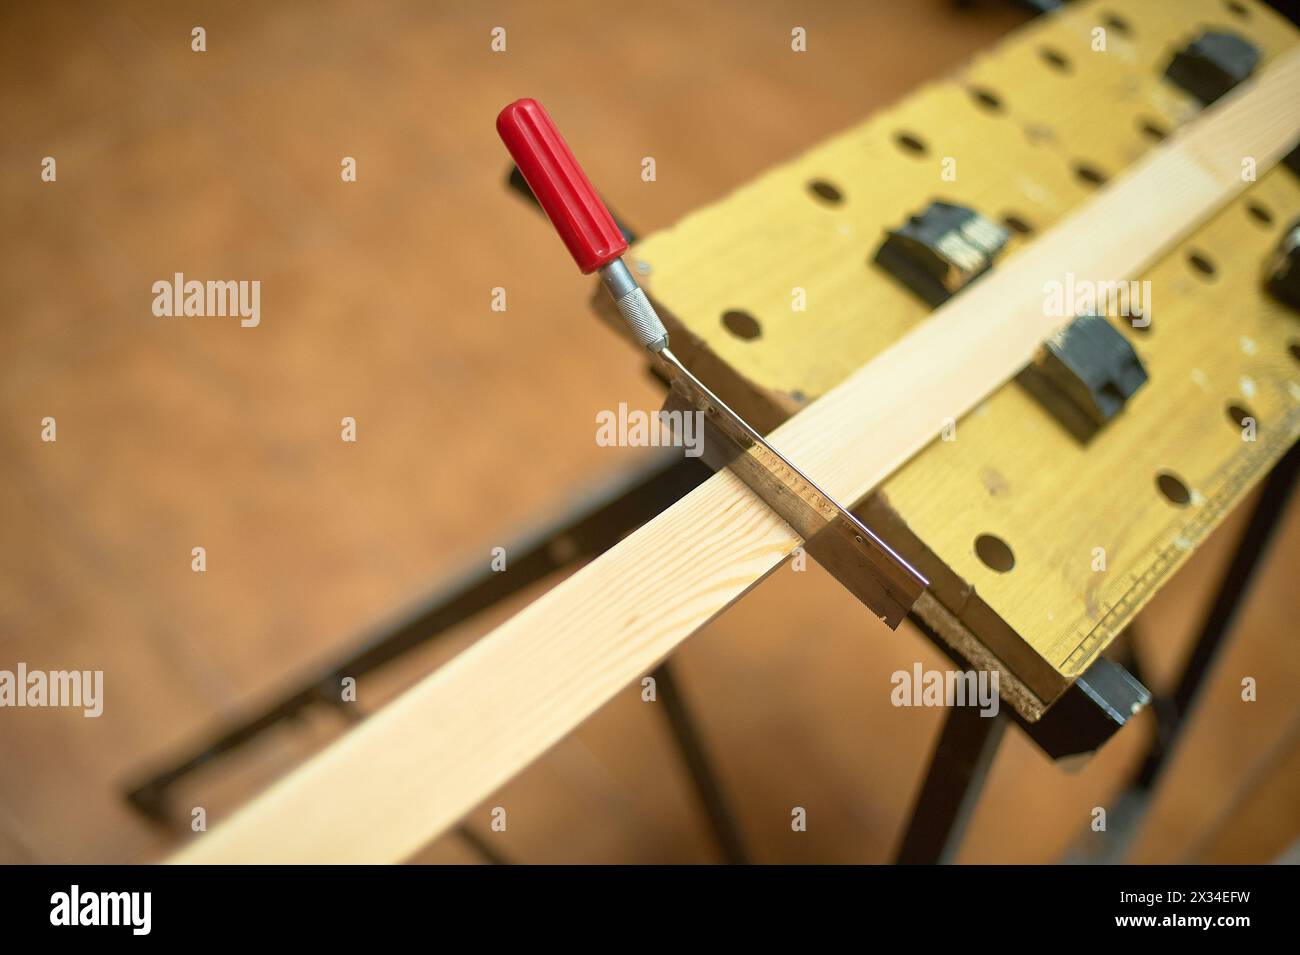 Image en gros plan d'une scie coupant un morceau de bois serré sur un établi, mettant en évidence la précision et les compétences techniques en menuiserie. Banque D'Images